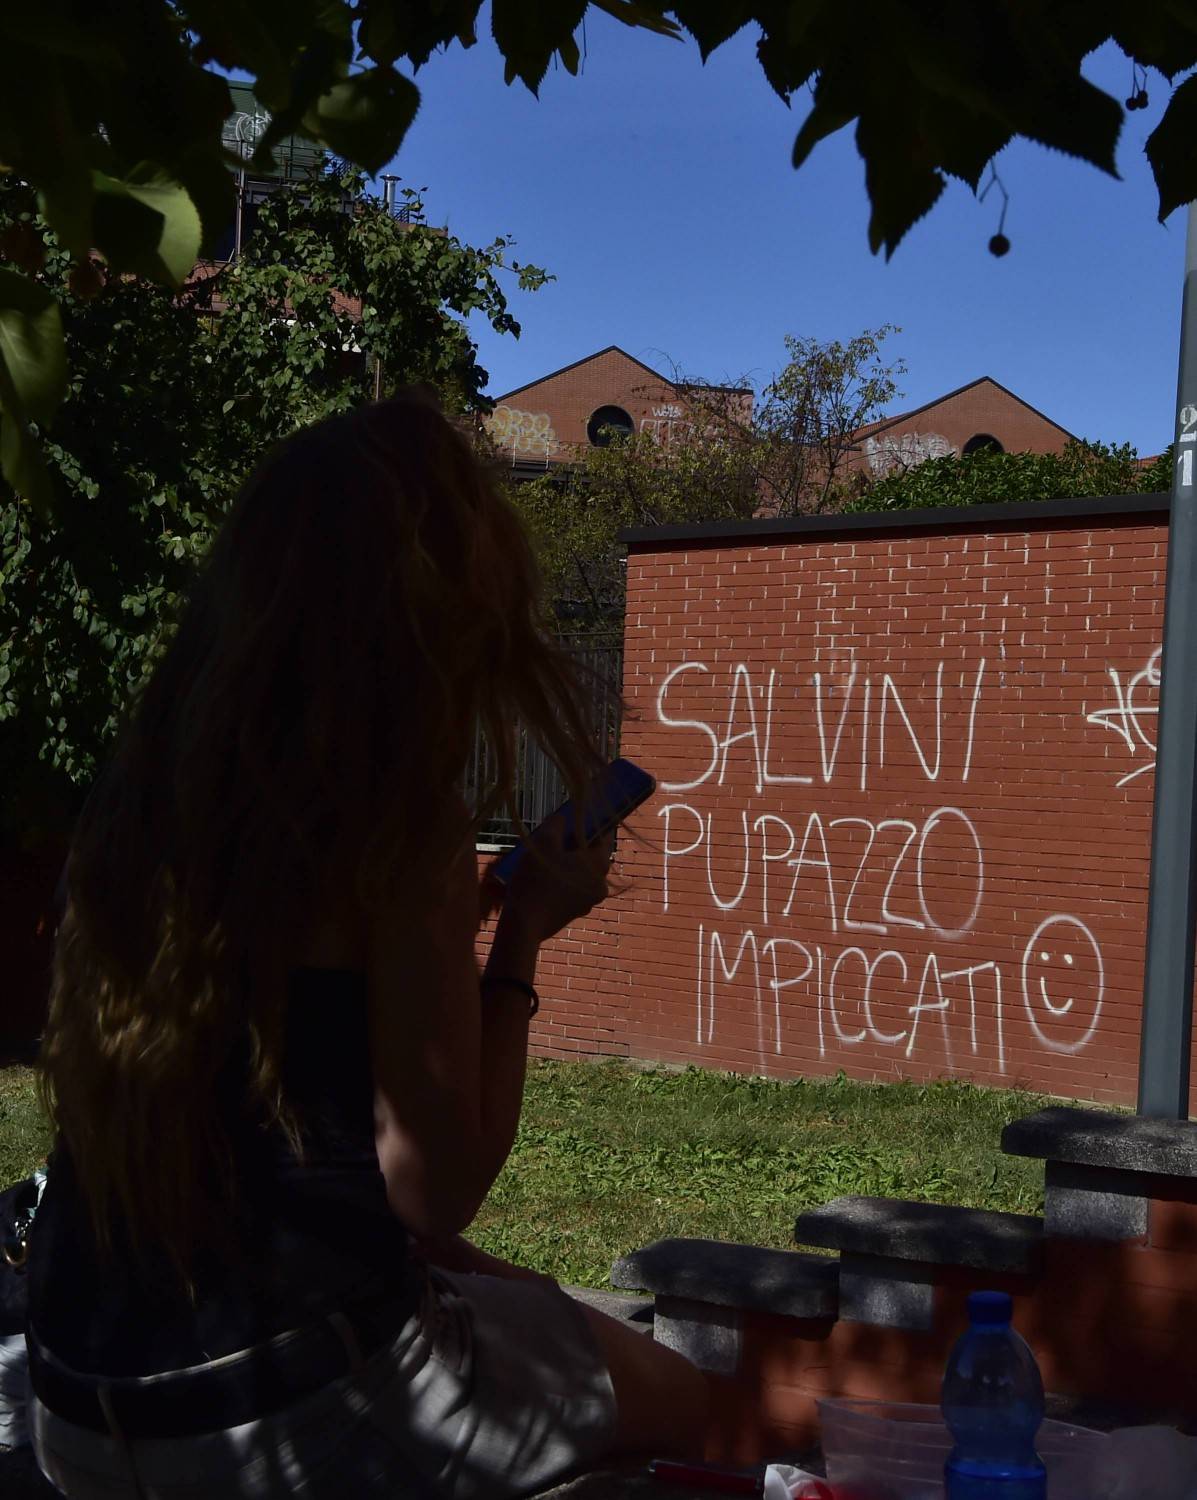 Minacce choc a Salvini: "Pupazzo impiccati"